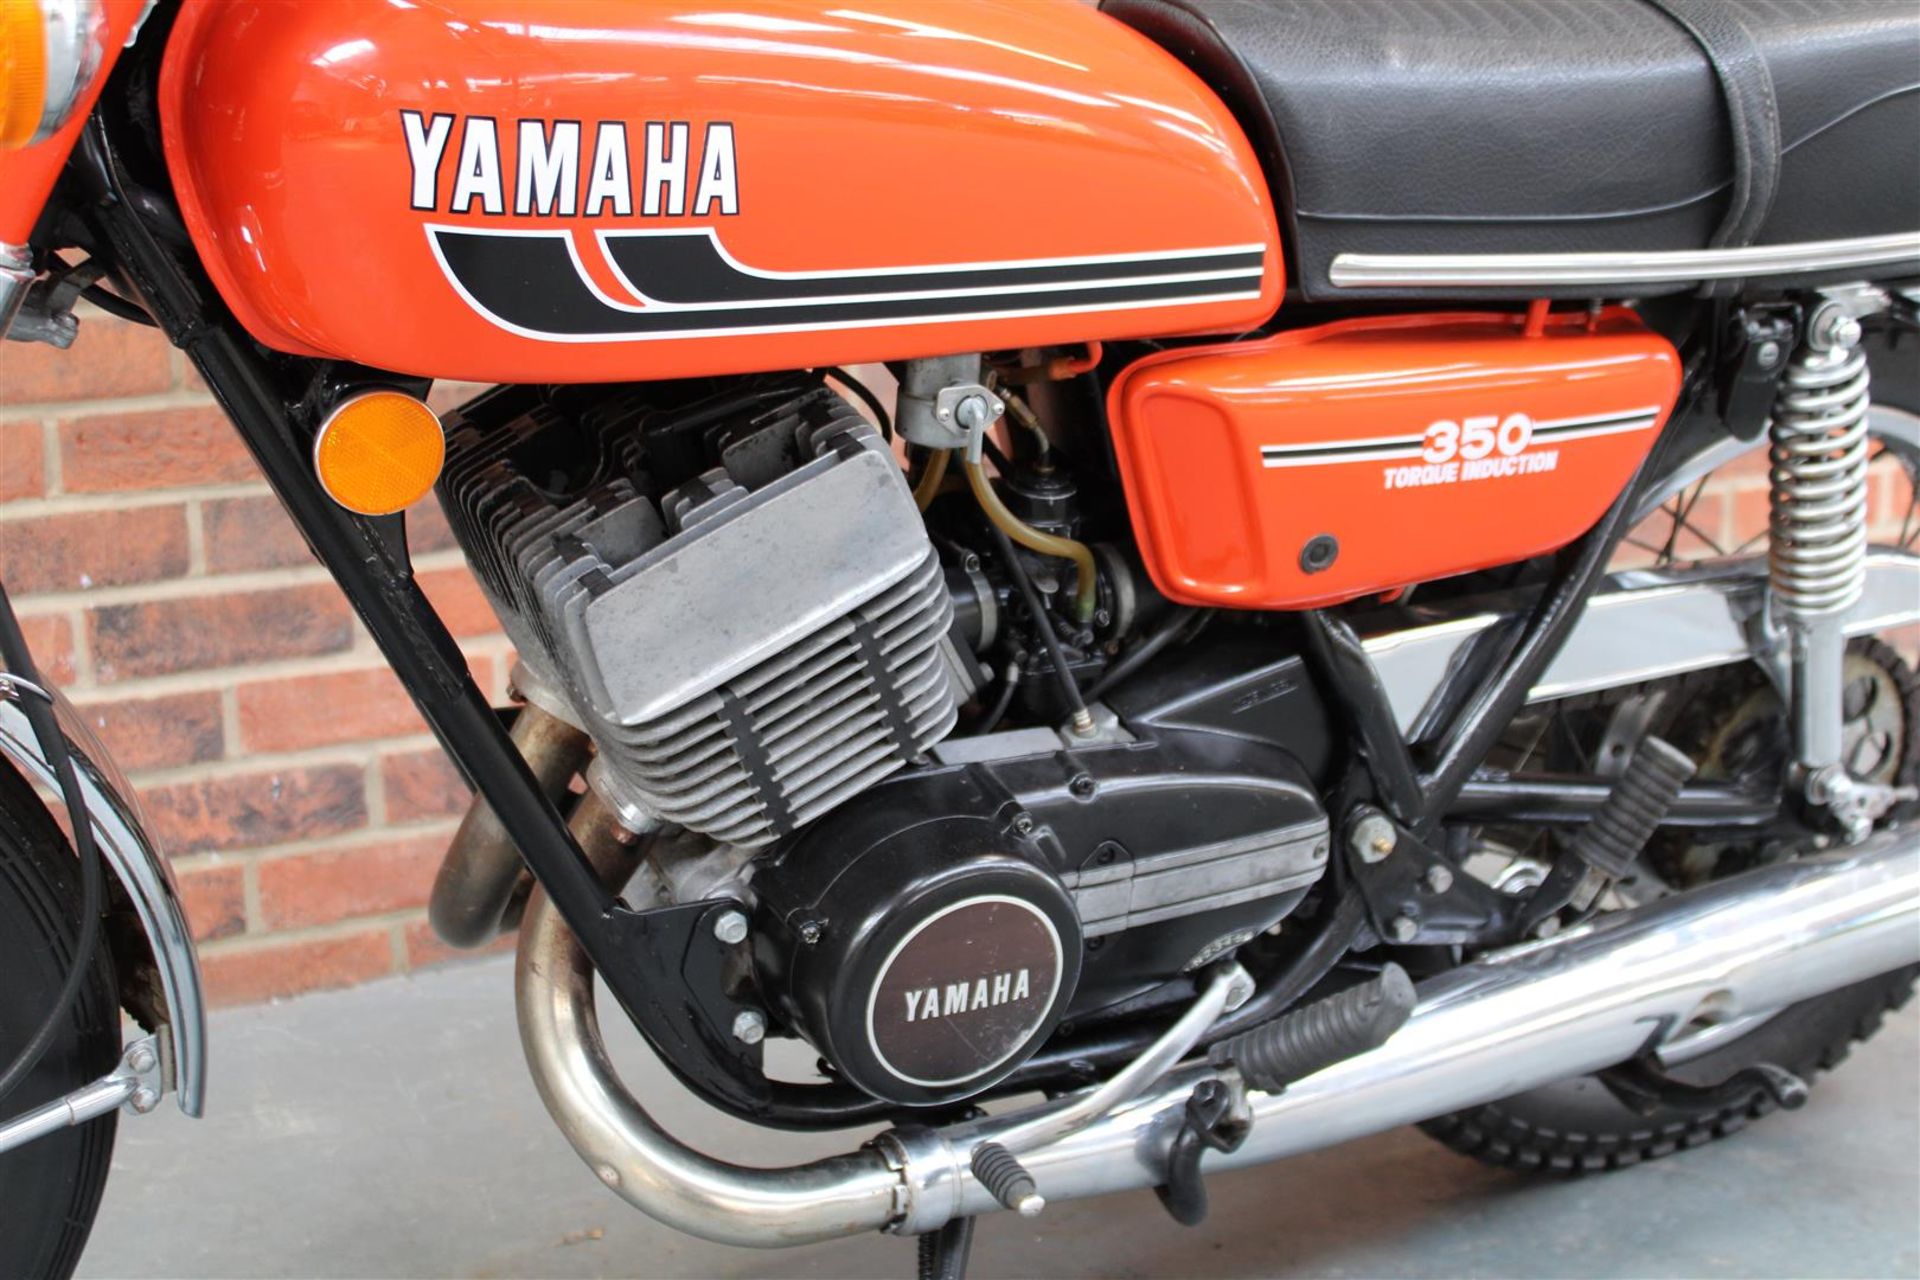 1975 Yamaha RD 350 - Image 2 of 13